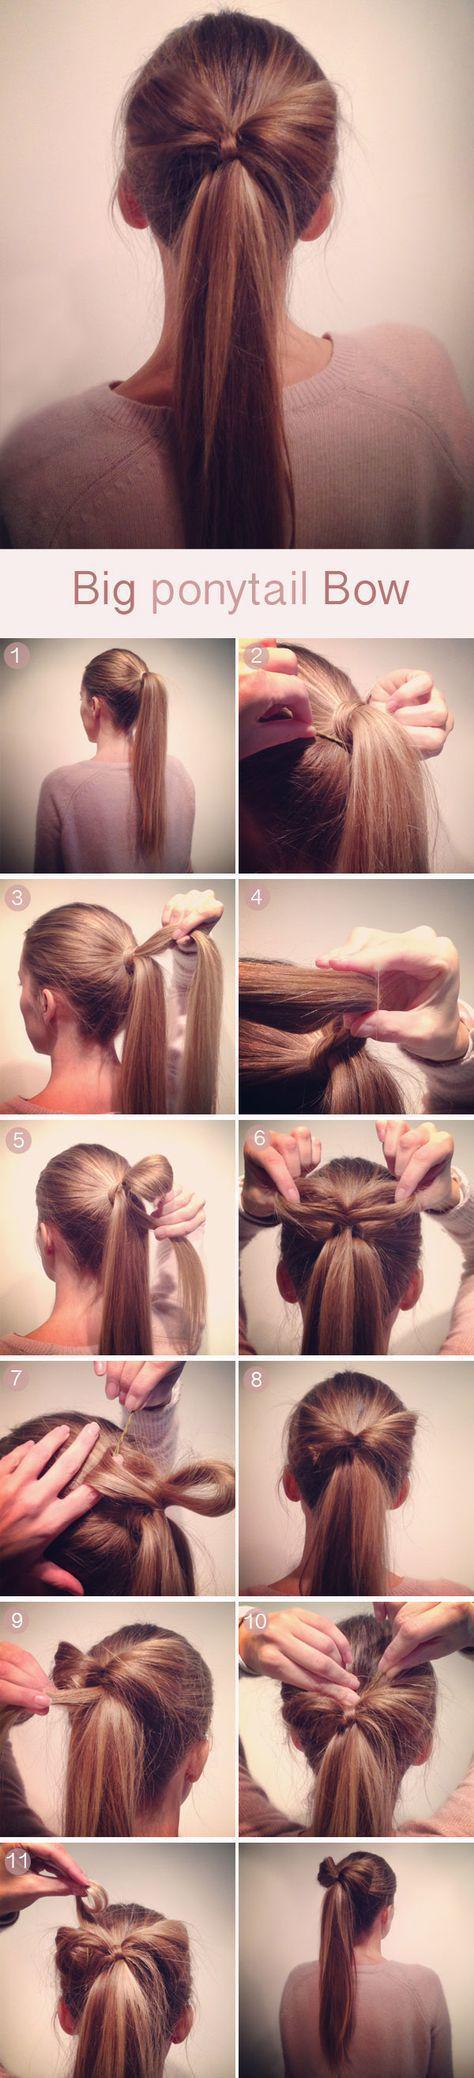 รูปภาพ:http://hairstylehub.com/wp-content/uploads/2016/10/big-ponytail-bow.jpg